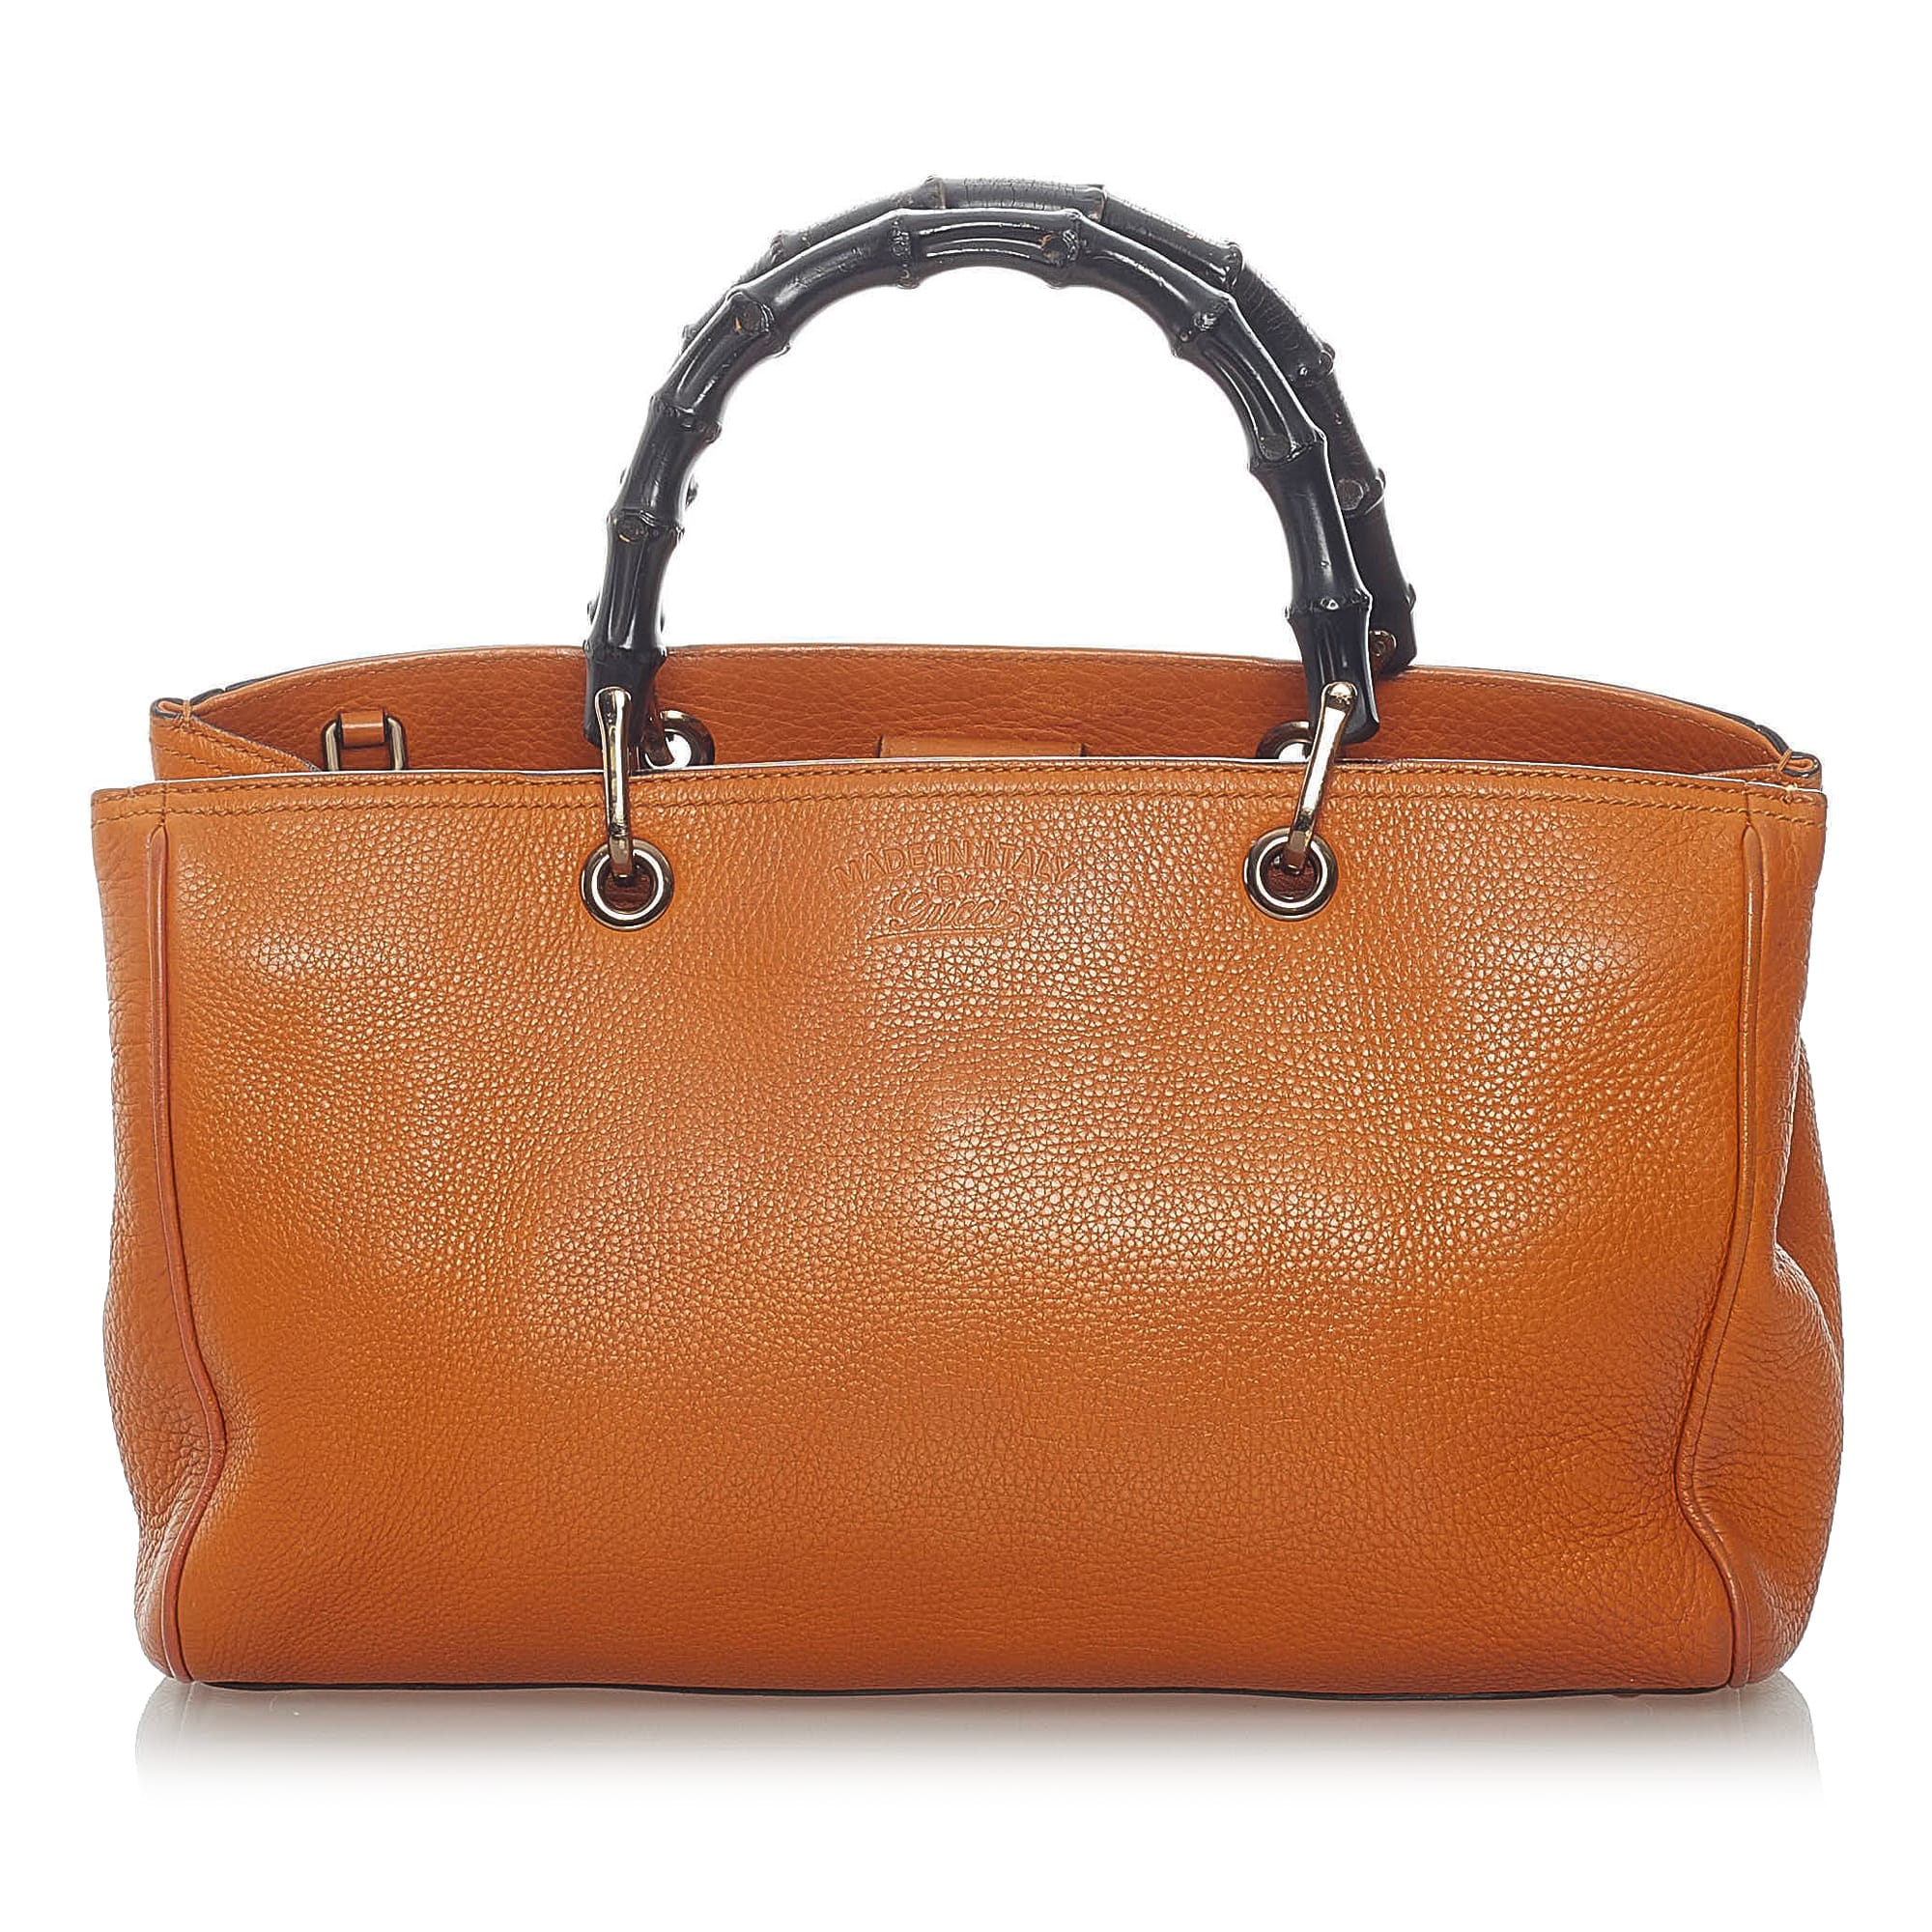 Gucci Bamboo Shopper Leather Satchel, ONESIZE, orange